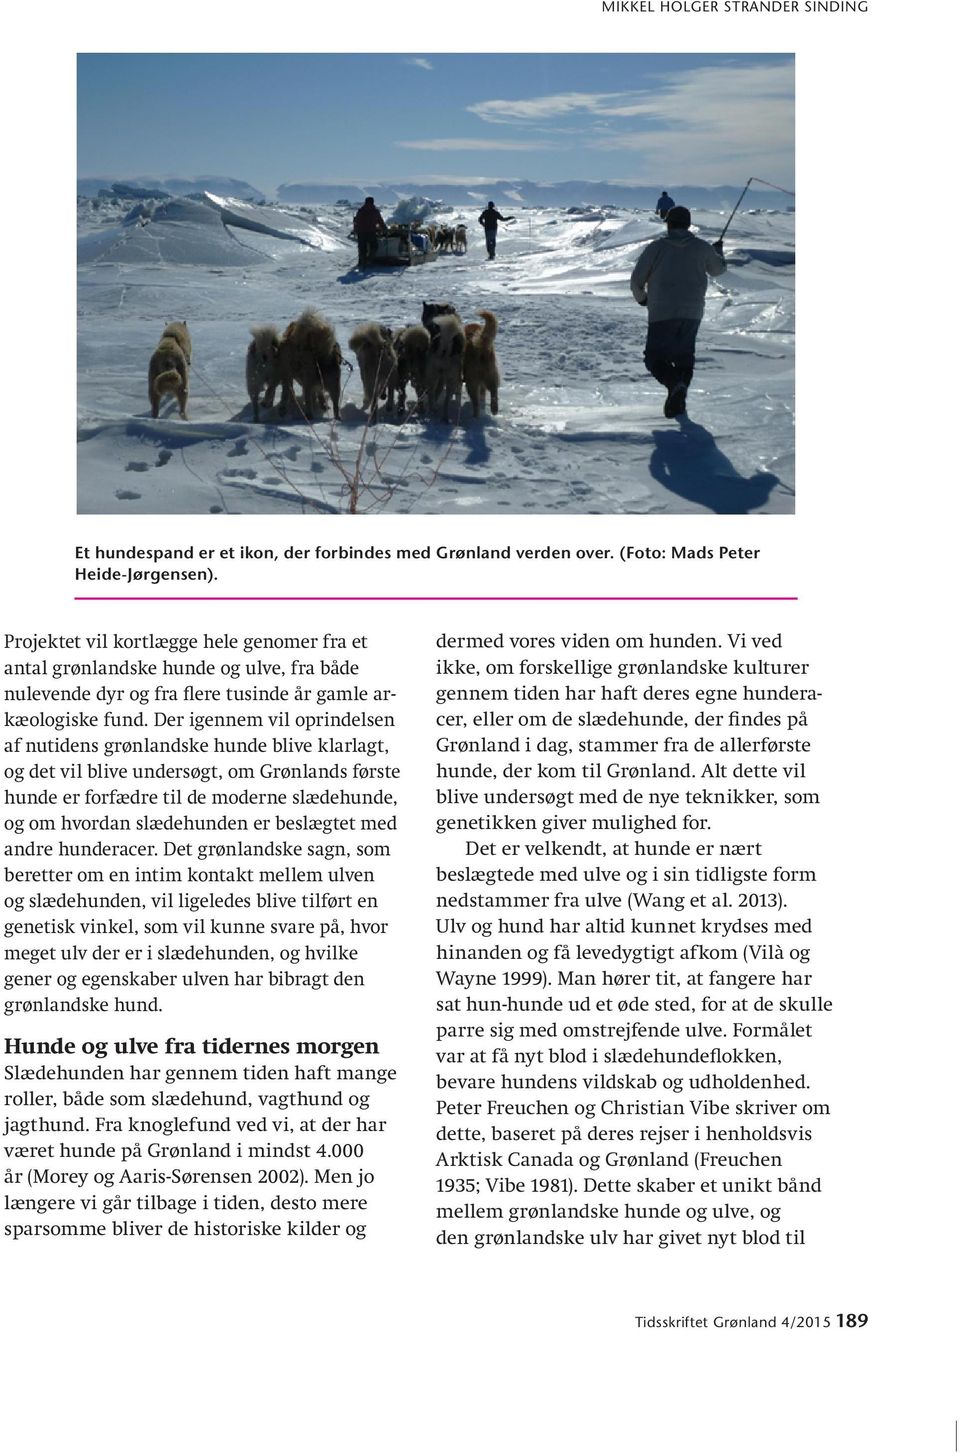 Der igennem vil oprindelsen af nutidens grønlandske hunde blive klarlagt, og det vil blive undersøgt, om Grønlands første hunde er forfædre til de moderne slædehunde, og om hvordan slædehunden er